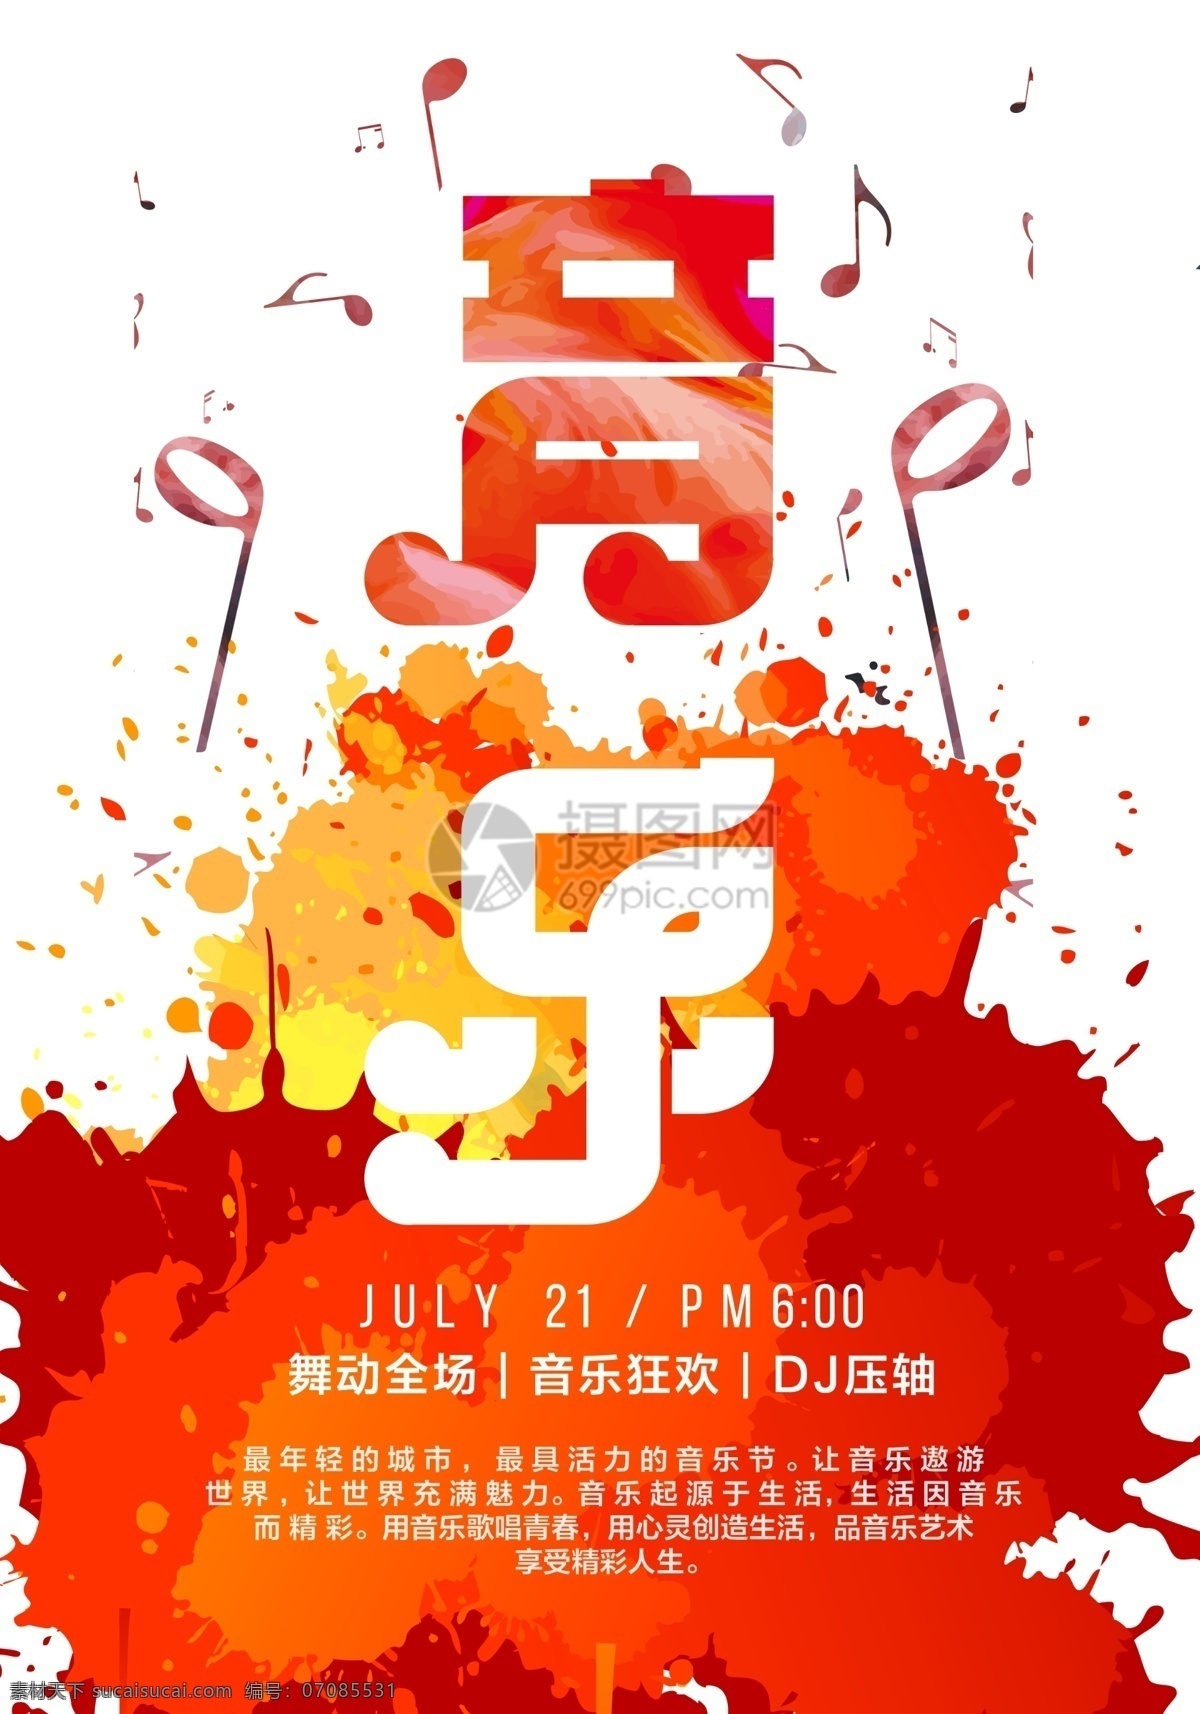 时尚 音乐节 宣传海报 炫彩 泼墨 音乐 音乐派对 party 音乐嘉年华 狂欢节 享受音乐 海报